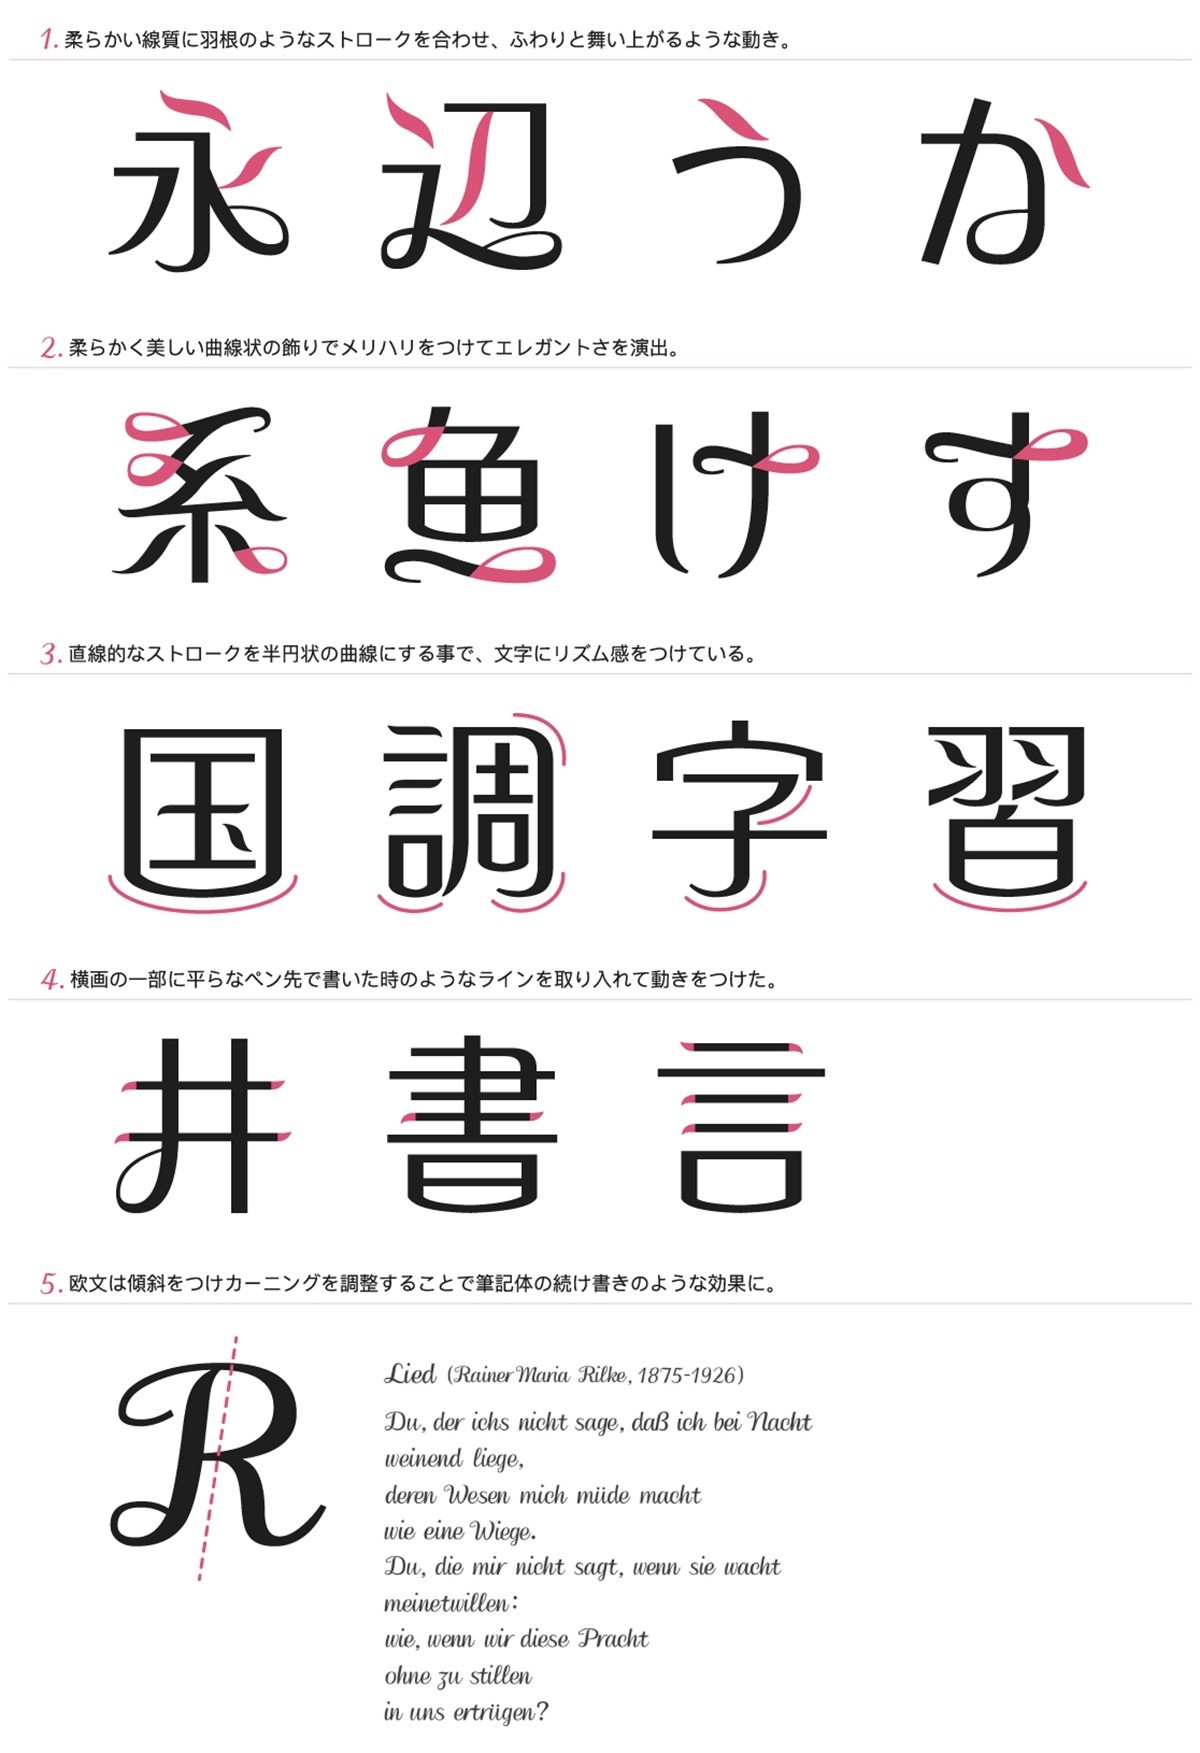 ユニーク漢字 花 文字 デザイン インスピレーションを与える名言